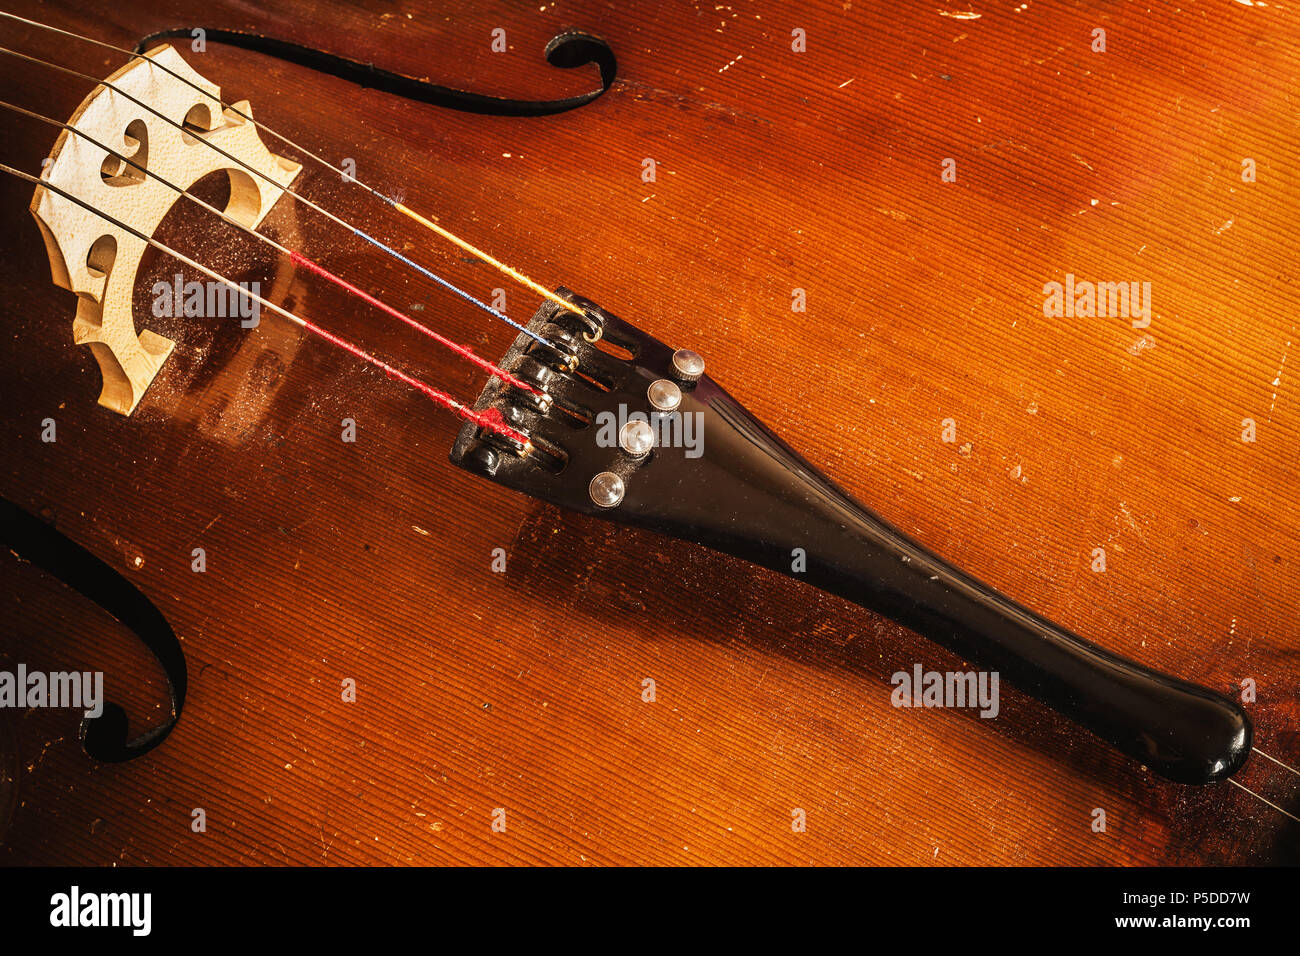 Détails d'un vieux violoncelle poussiéreux, vue rapprochée sur les cordes et le corps. Banque D'Images